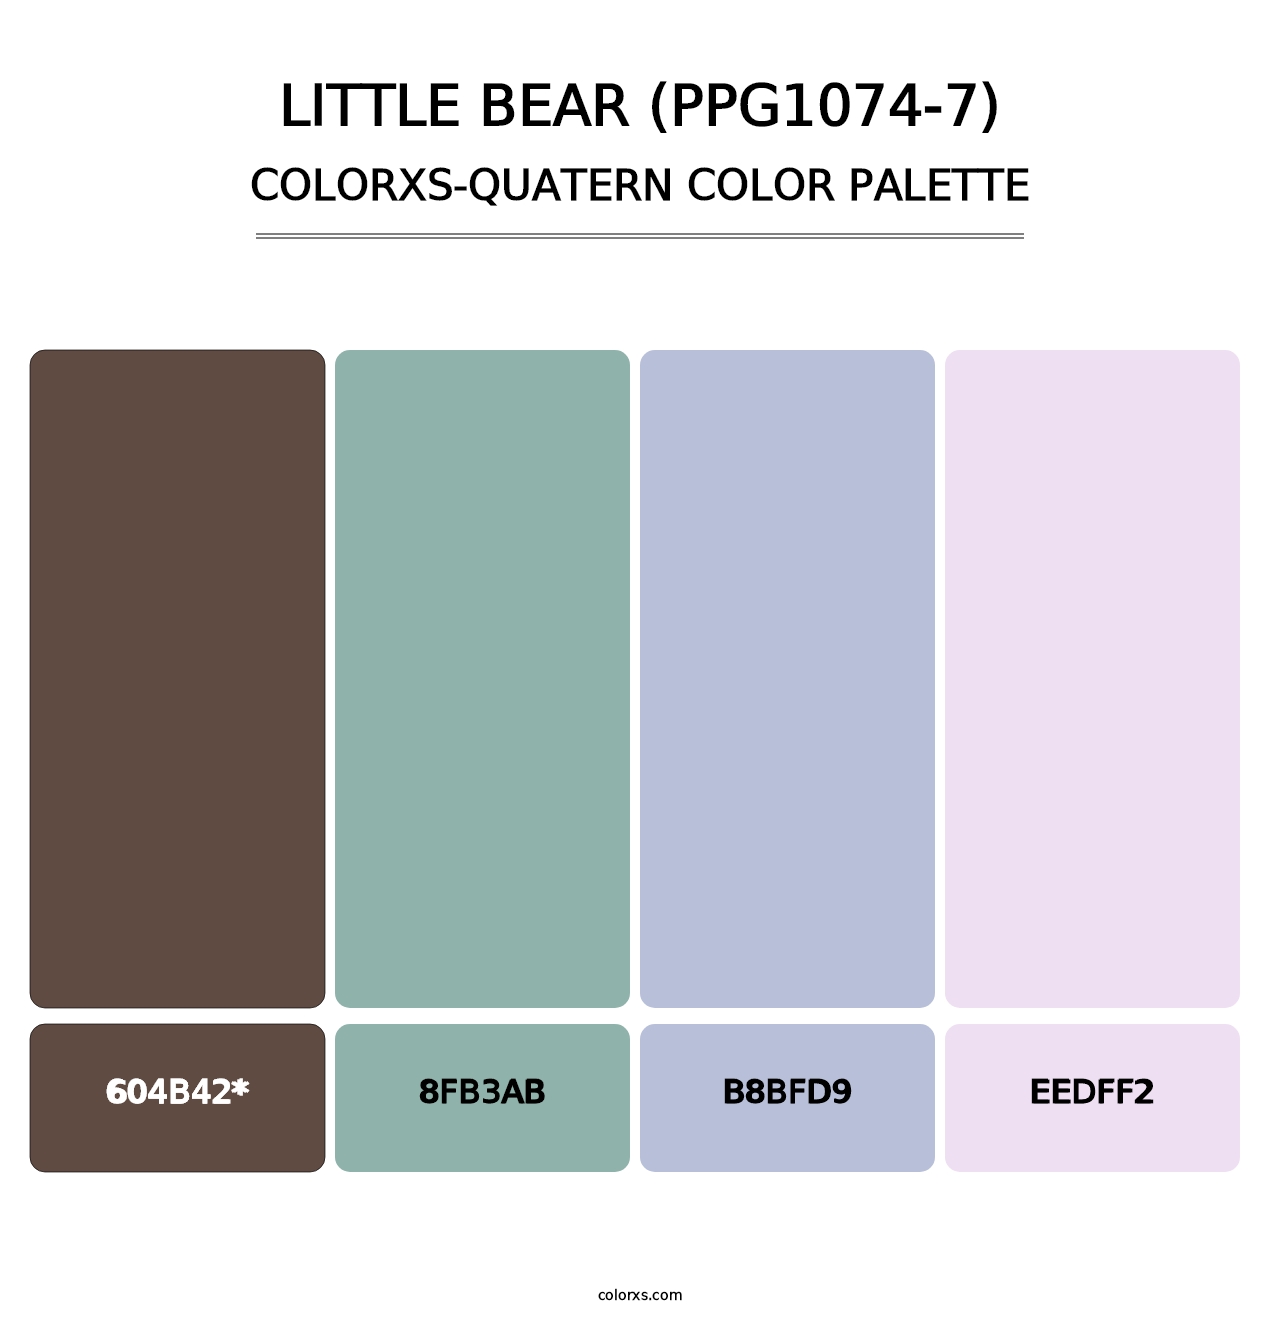 Little Bear (PPG1074-7) - Colorxs Quatern Palette